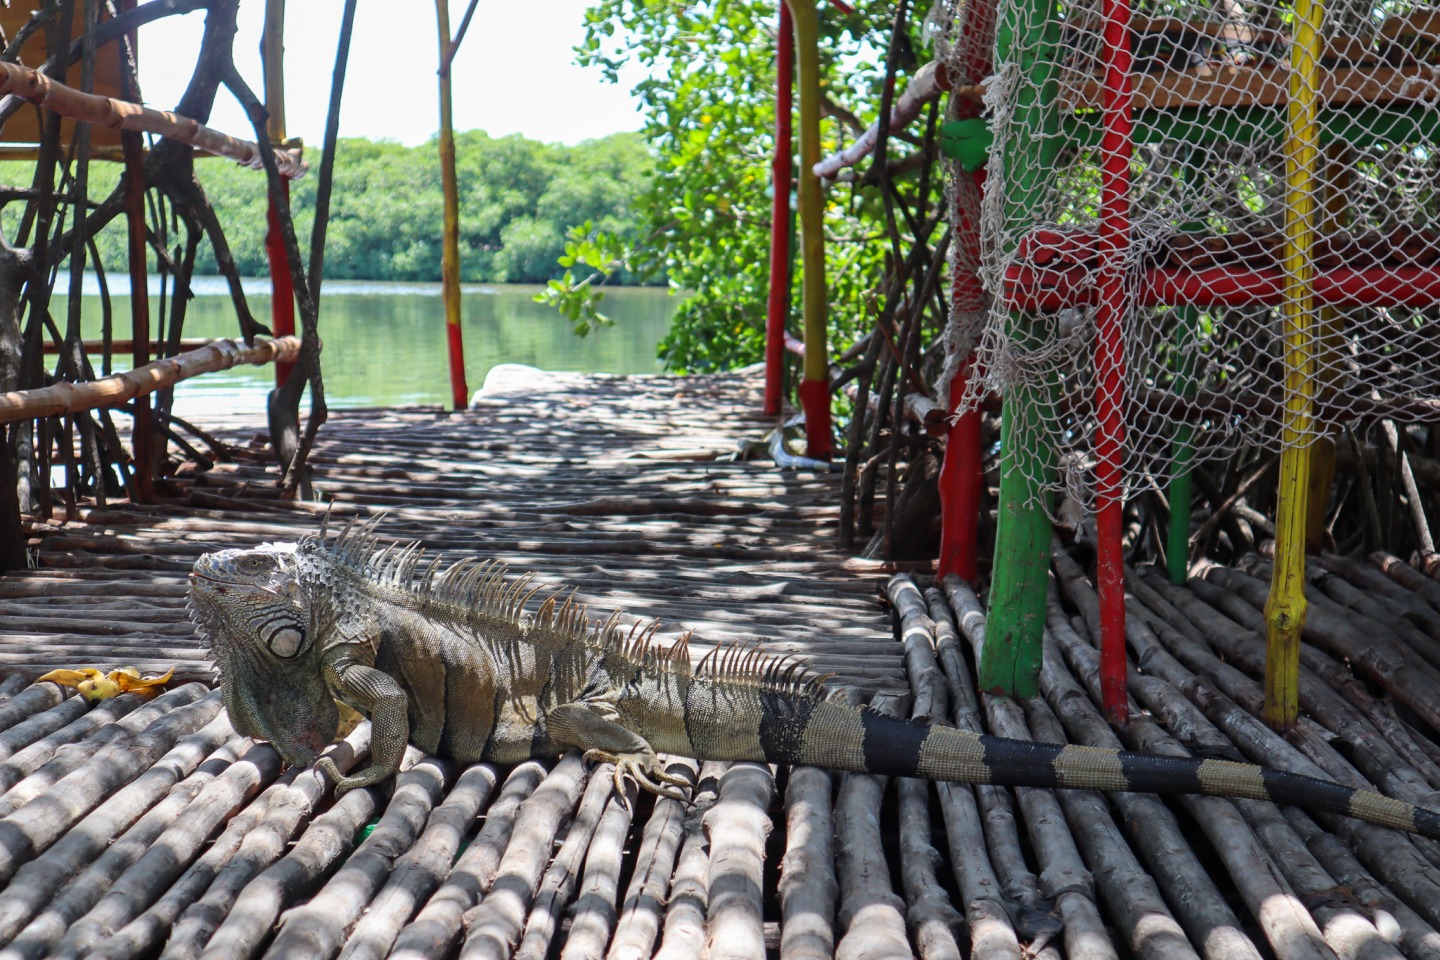 Big Iguana lounging on dock